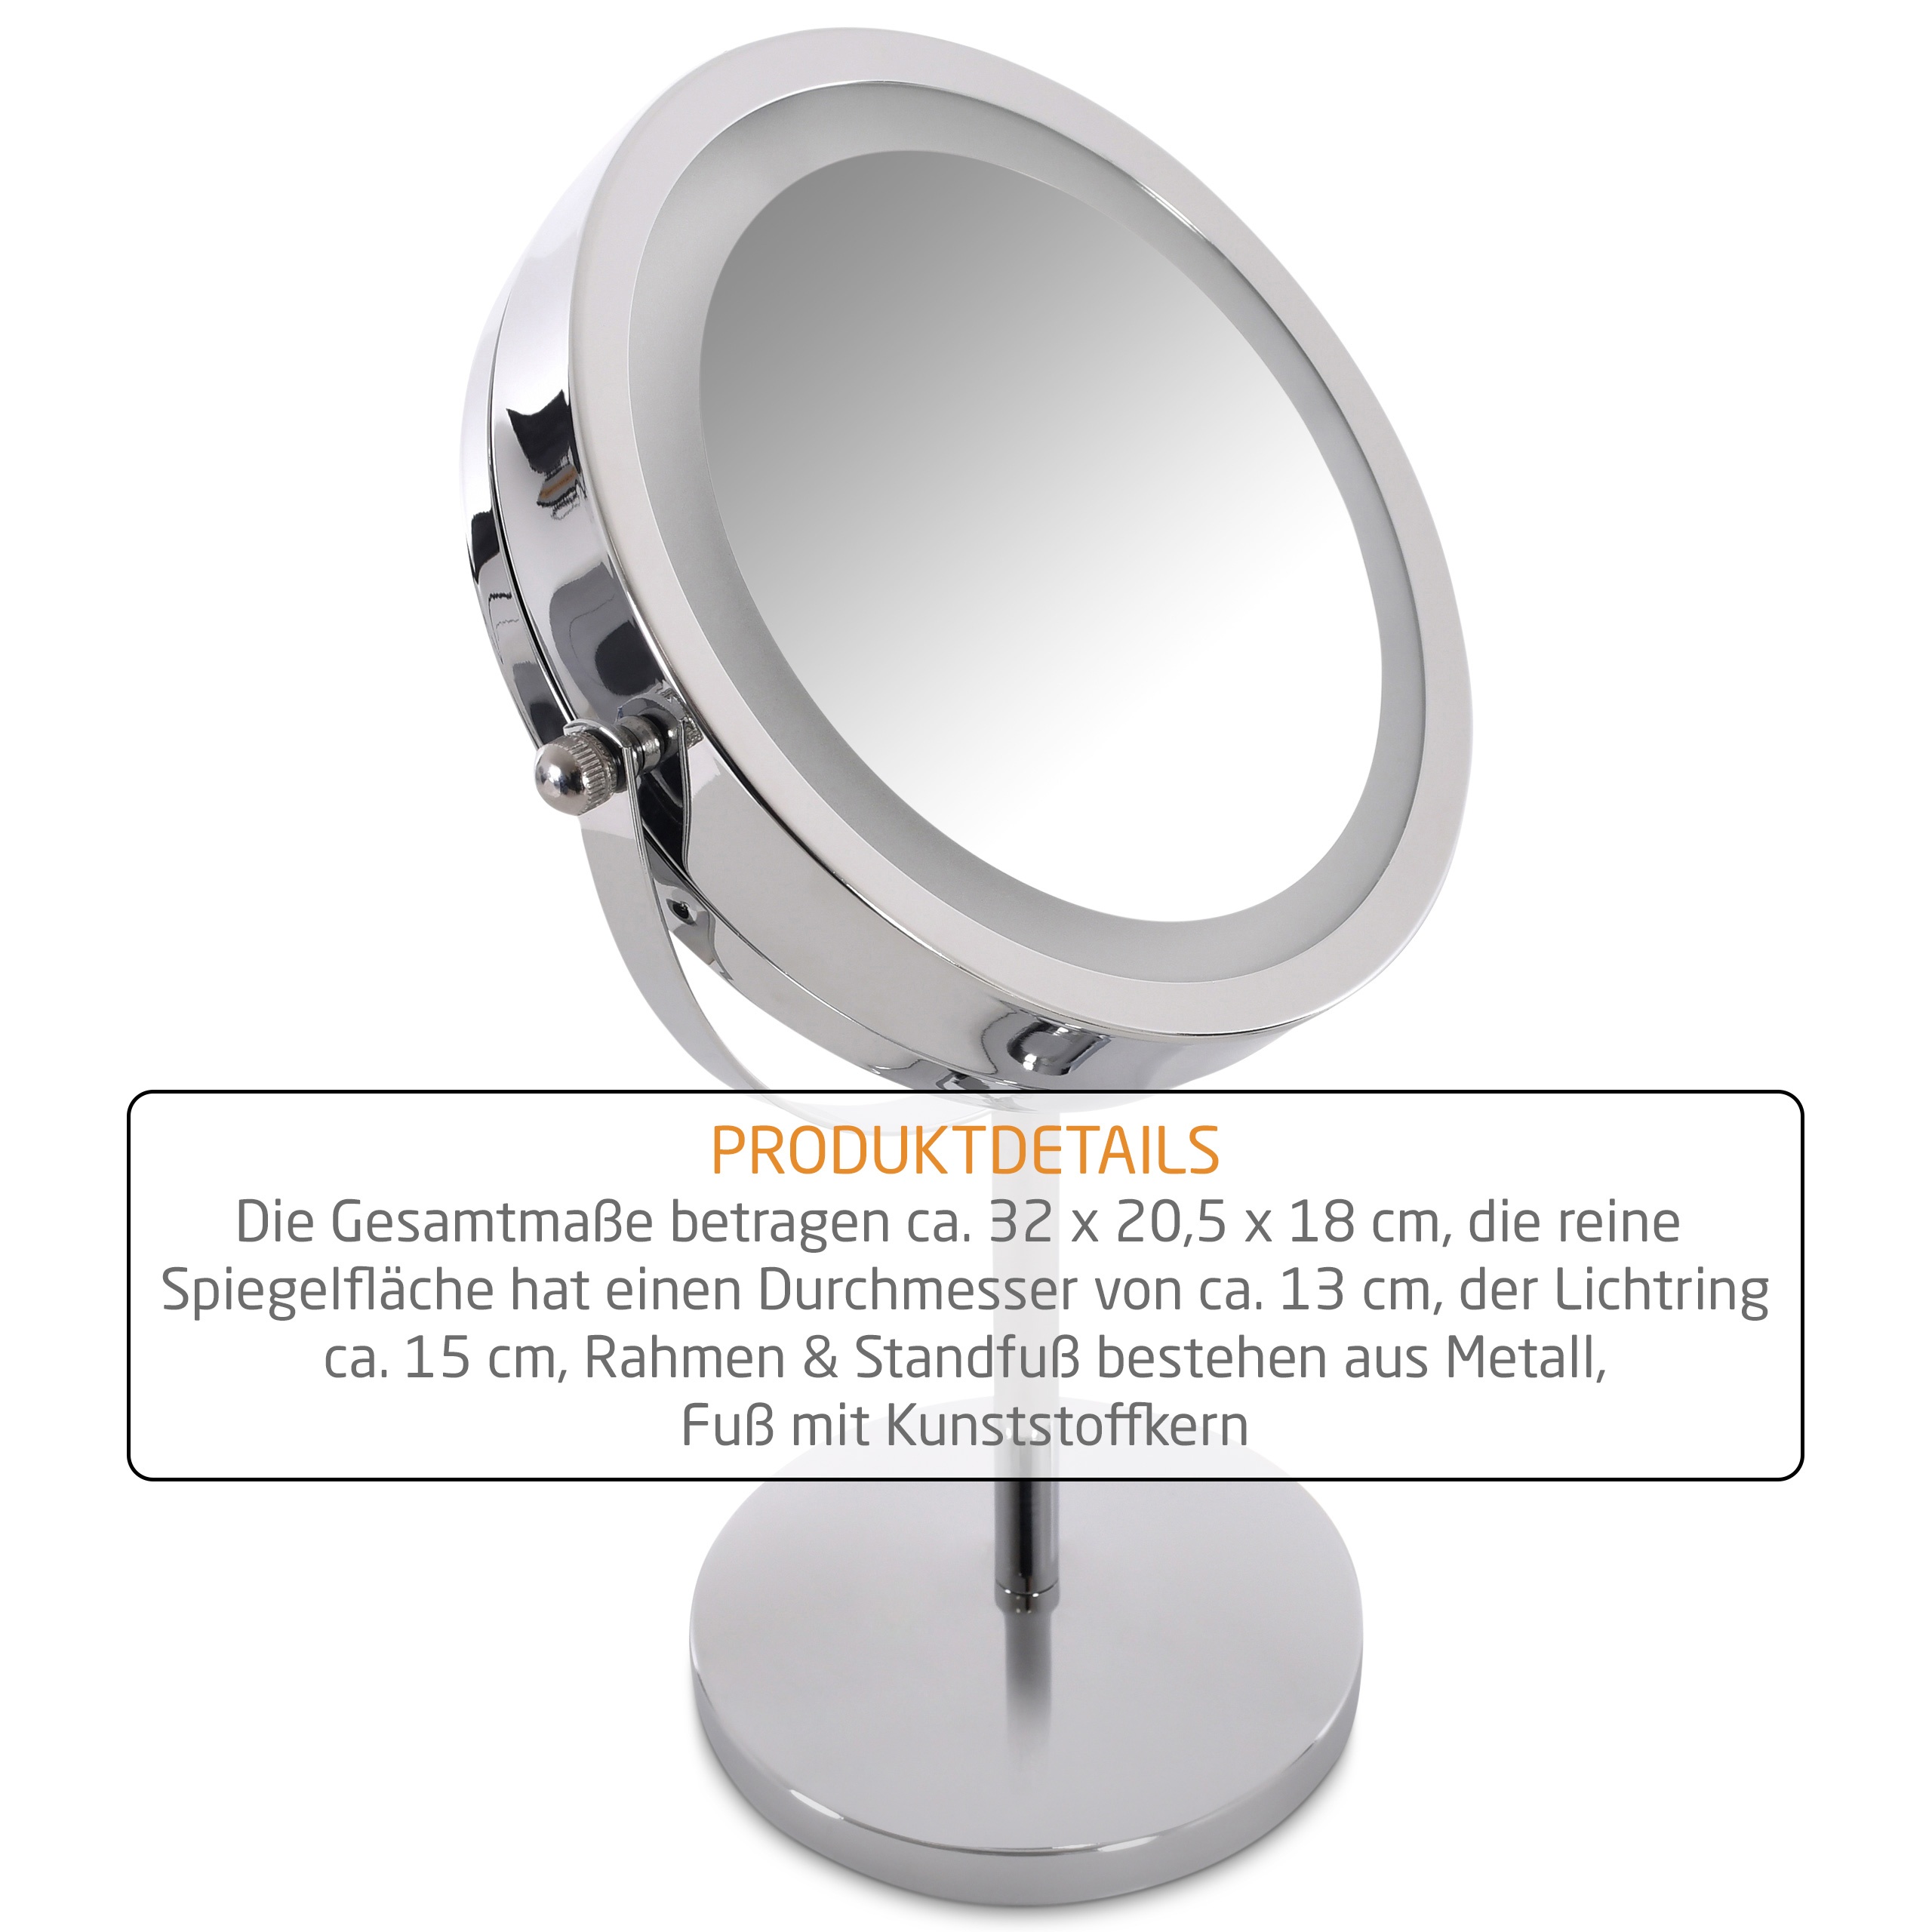 Raburg Kosmetikspiegel Nika, LED-Licht, 3x/1x Vergrößerung, doppelseitig, 360°, 18 cm Ø, 32 cm hoch